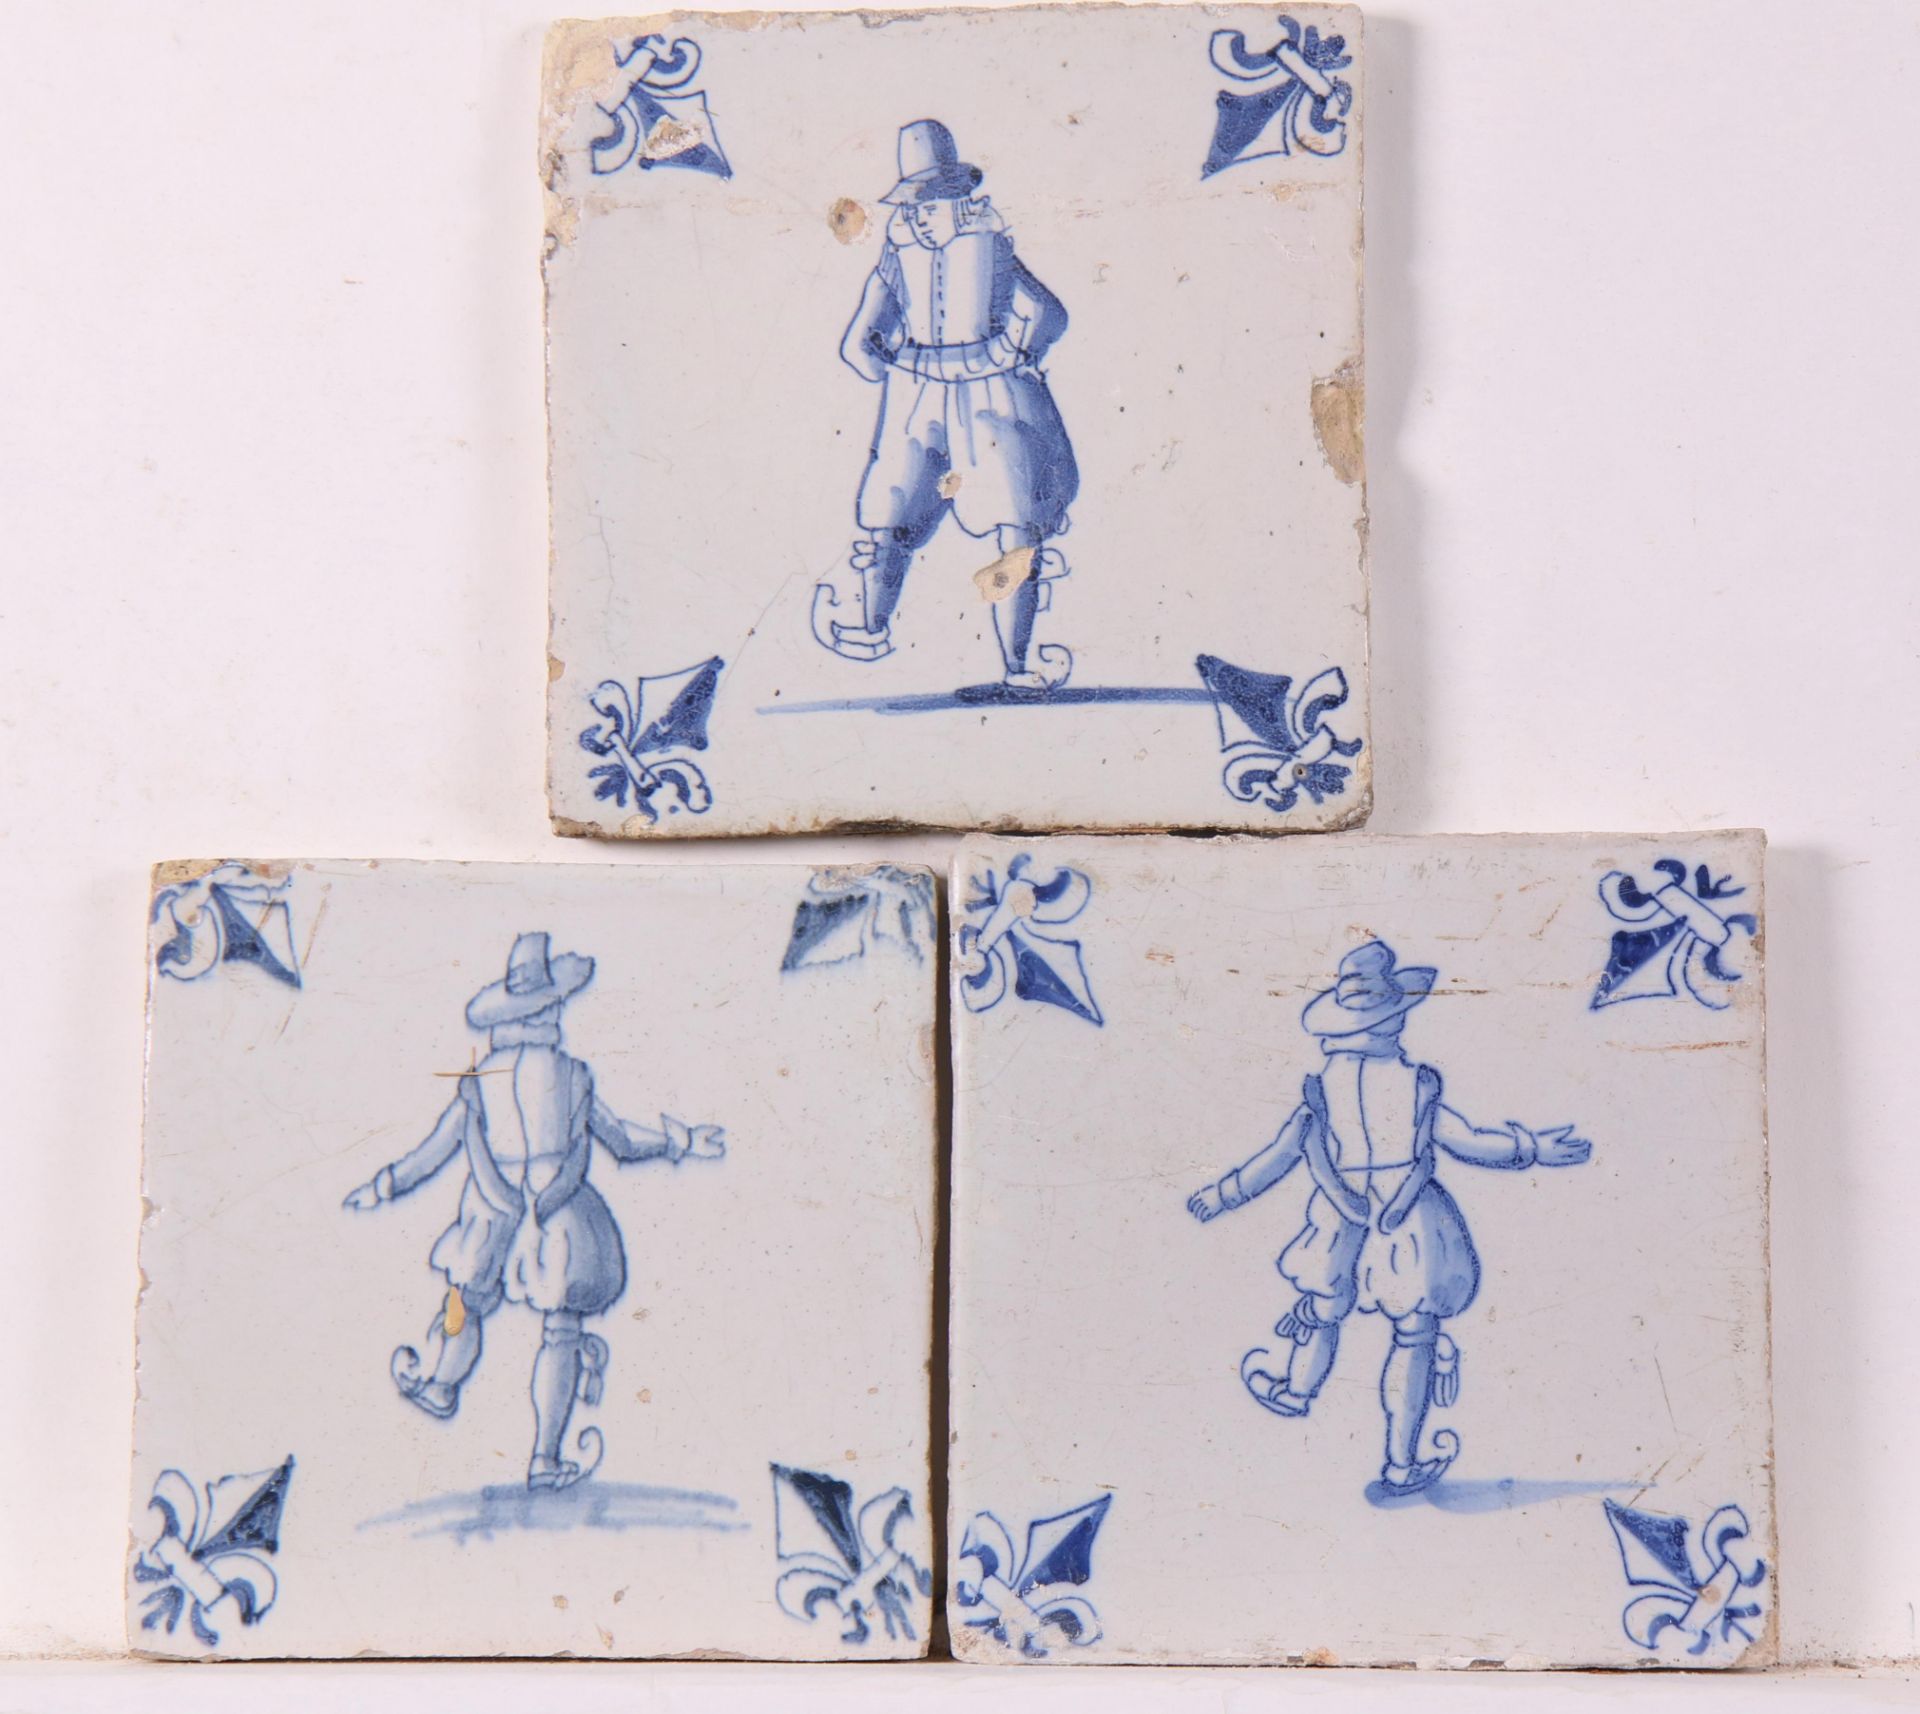 Drie blauw aardewerk figuurdecor tegels, ca. 1620 - 1650;